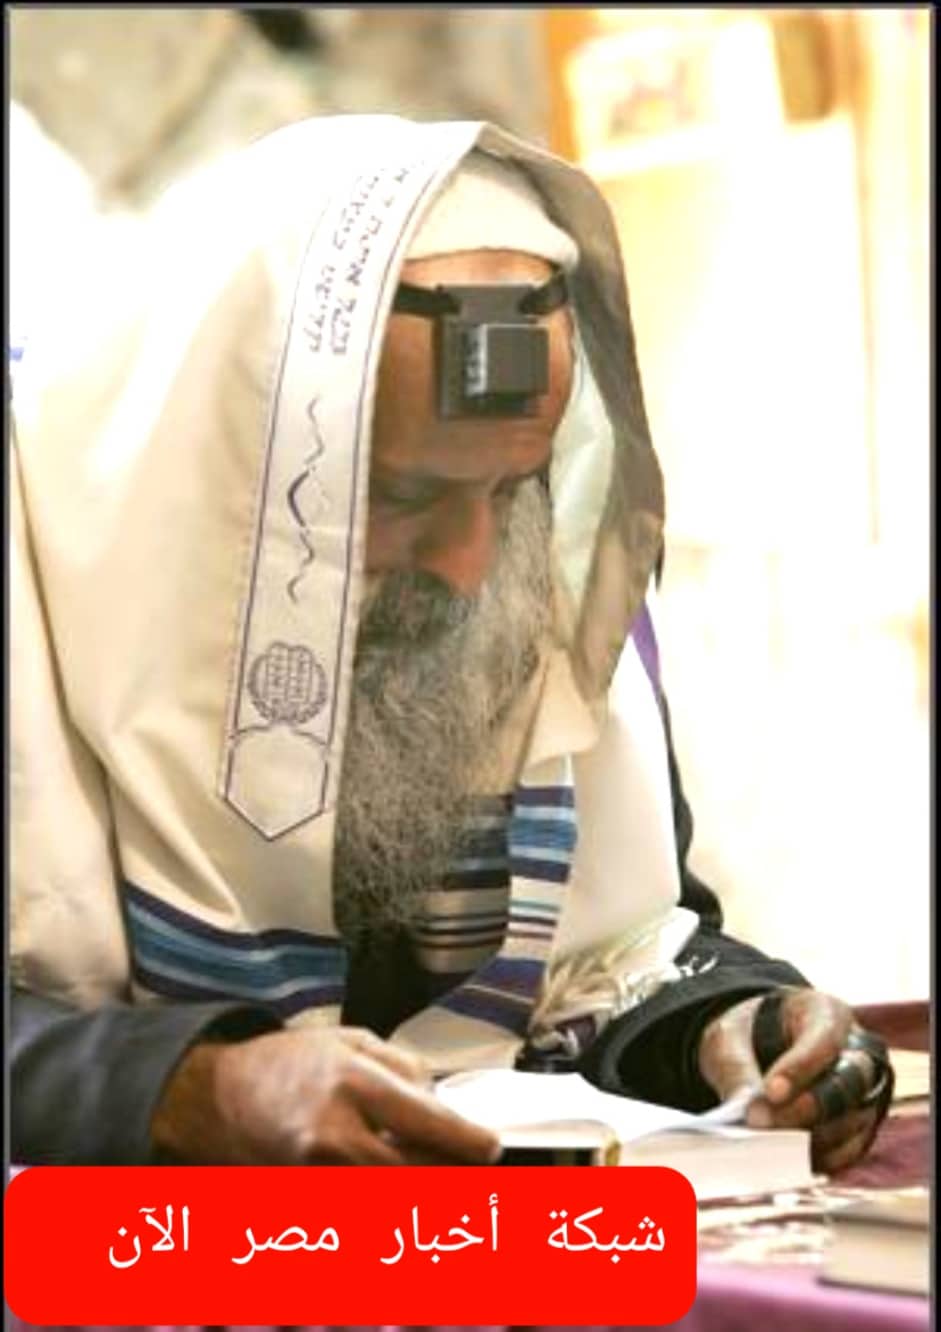 يهود الطيالسة اقدم الجاليات اليهودية